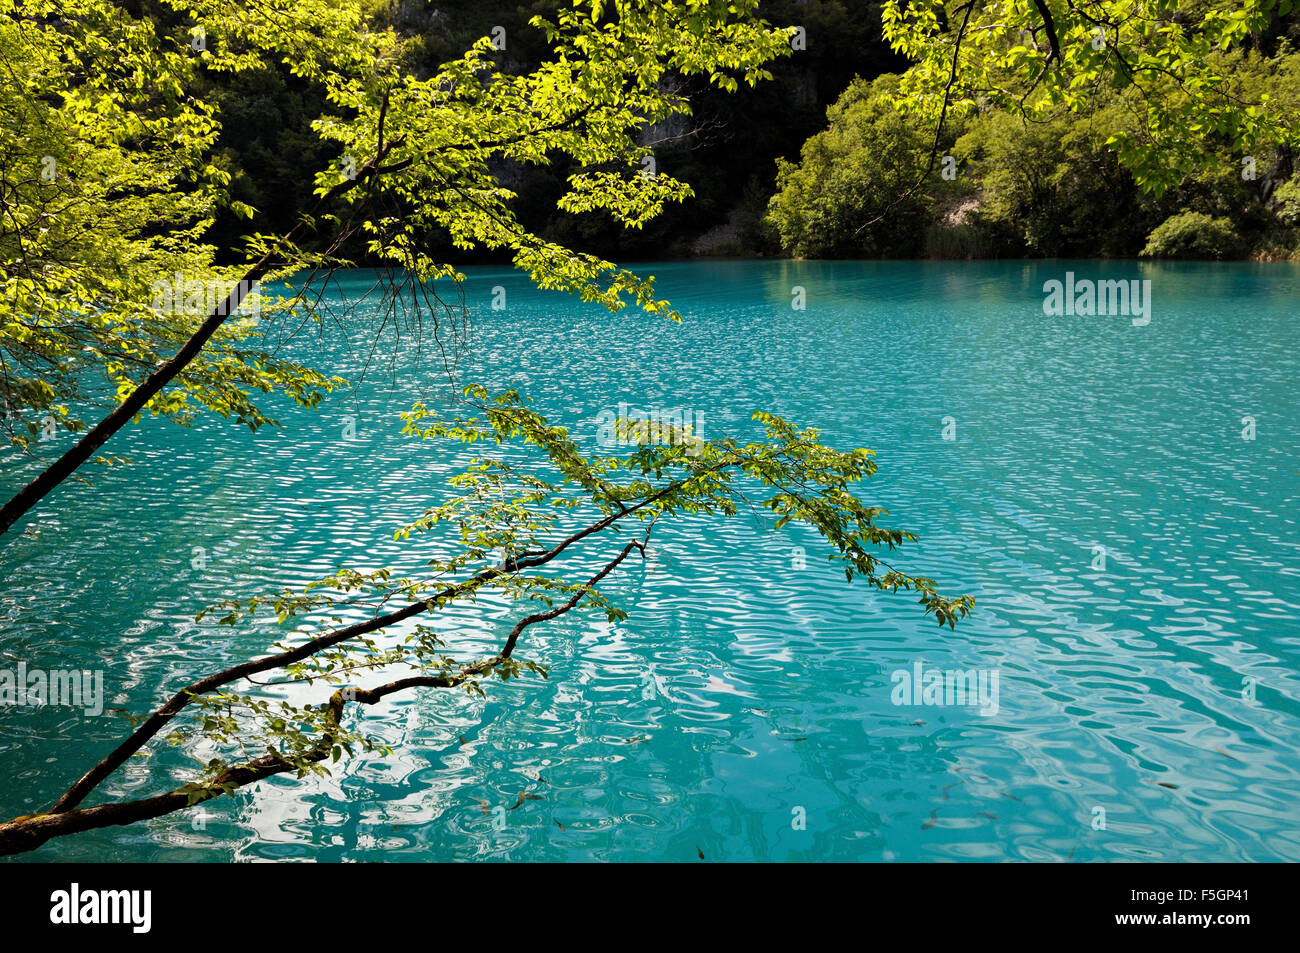 Feuilles vert turquoise au-dessus de l'eau dans le parc national des Lacs de Plitvice, lakes, Croatie Banque D'Images